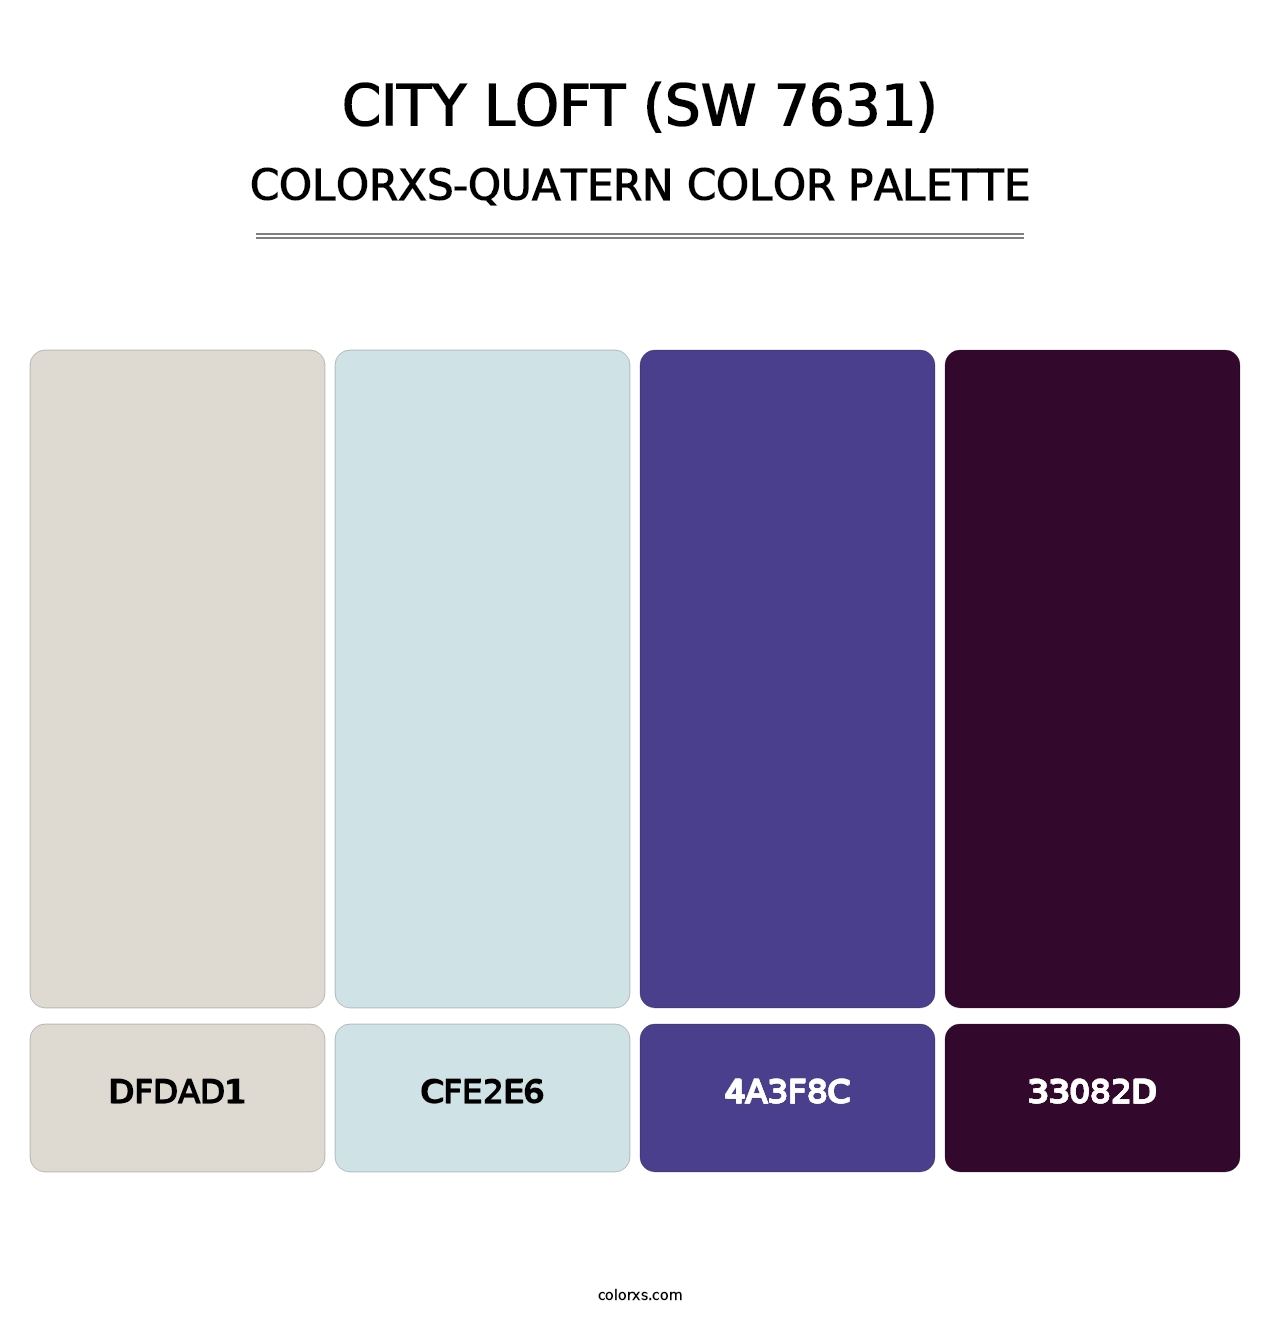 City Loft (SW 7631) - Colorxs Quatern Palette